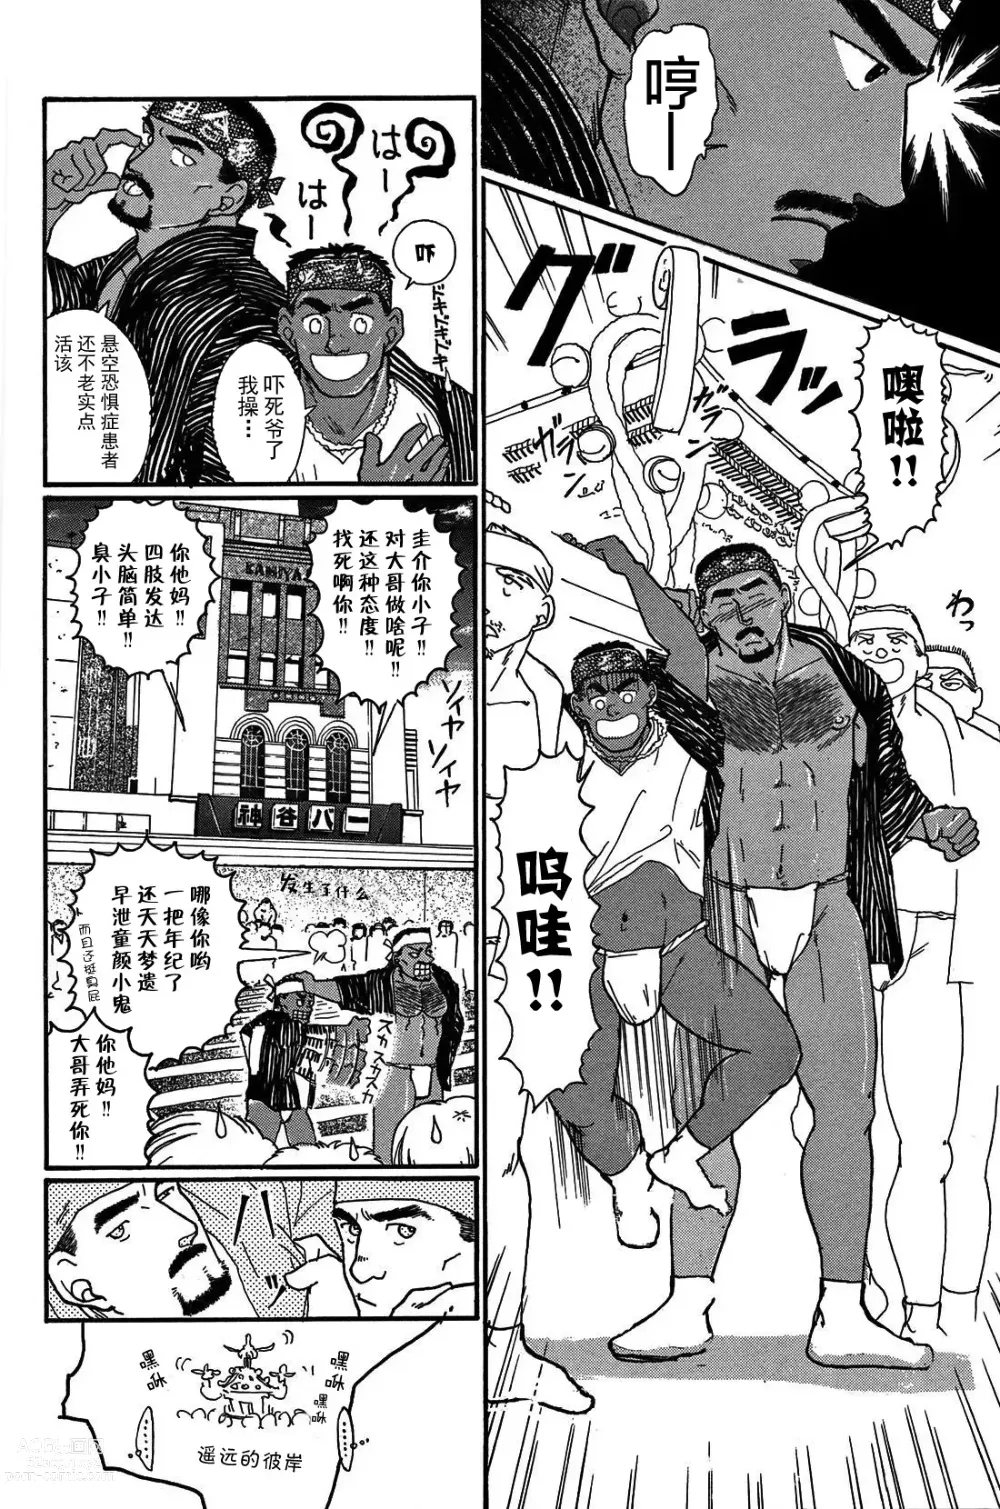 Page 5 of manga 纯情!! 第一章 「纯情」